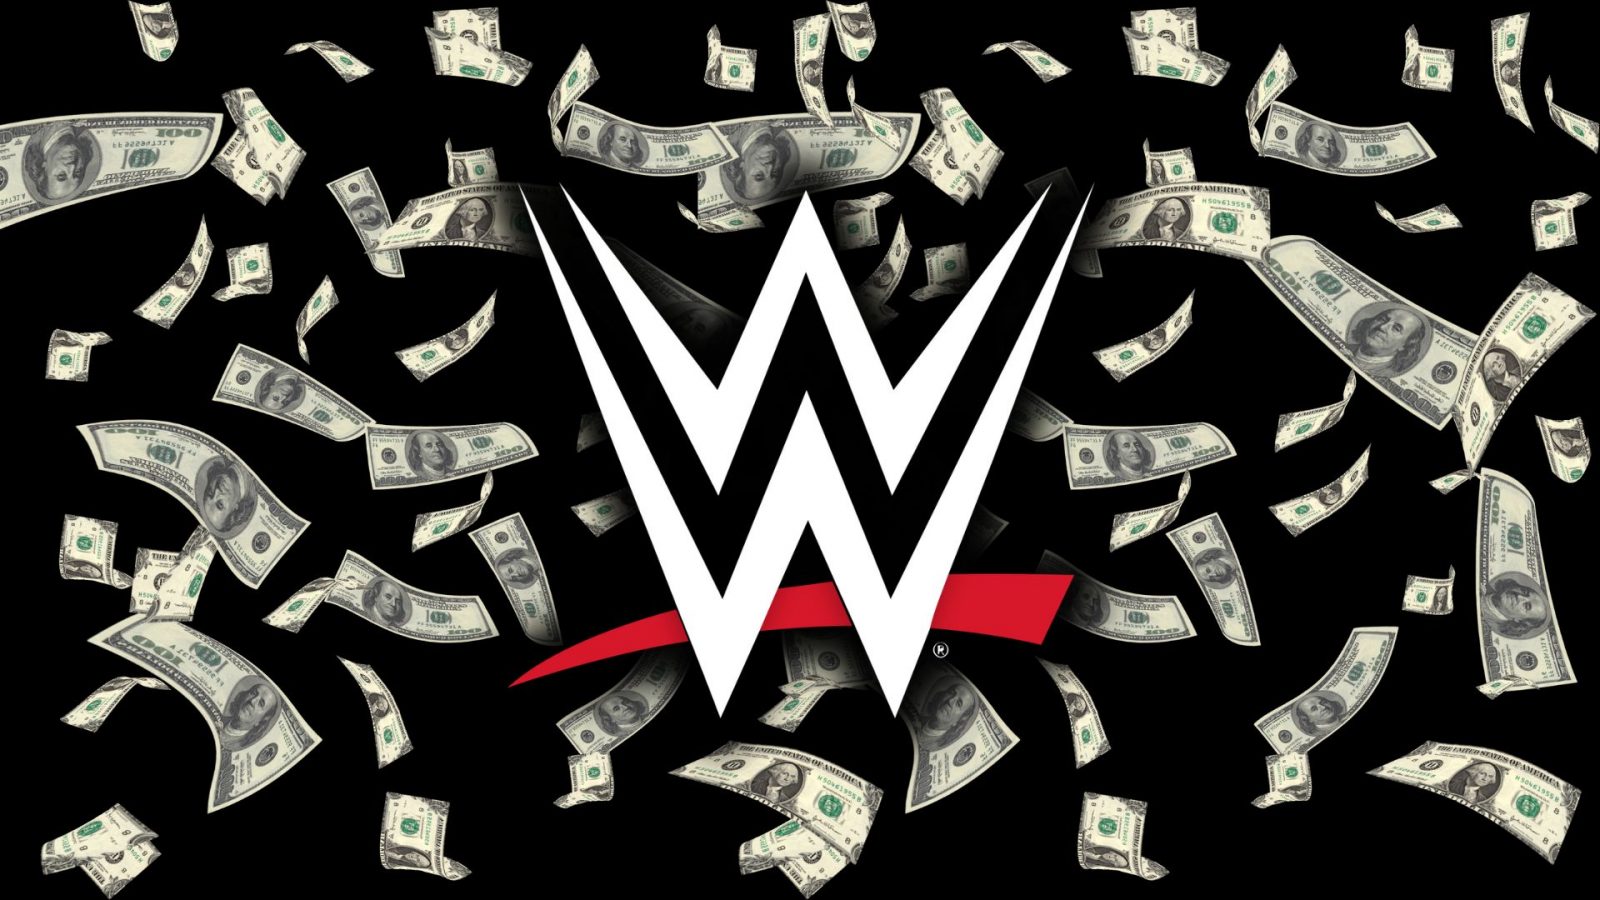 يزعم المطلعون أن WWE زيفت صفقة بيع سعودية لإغراء مشترين آخرين